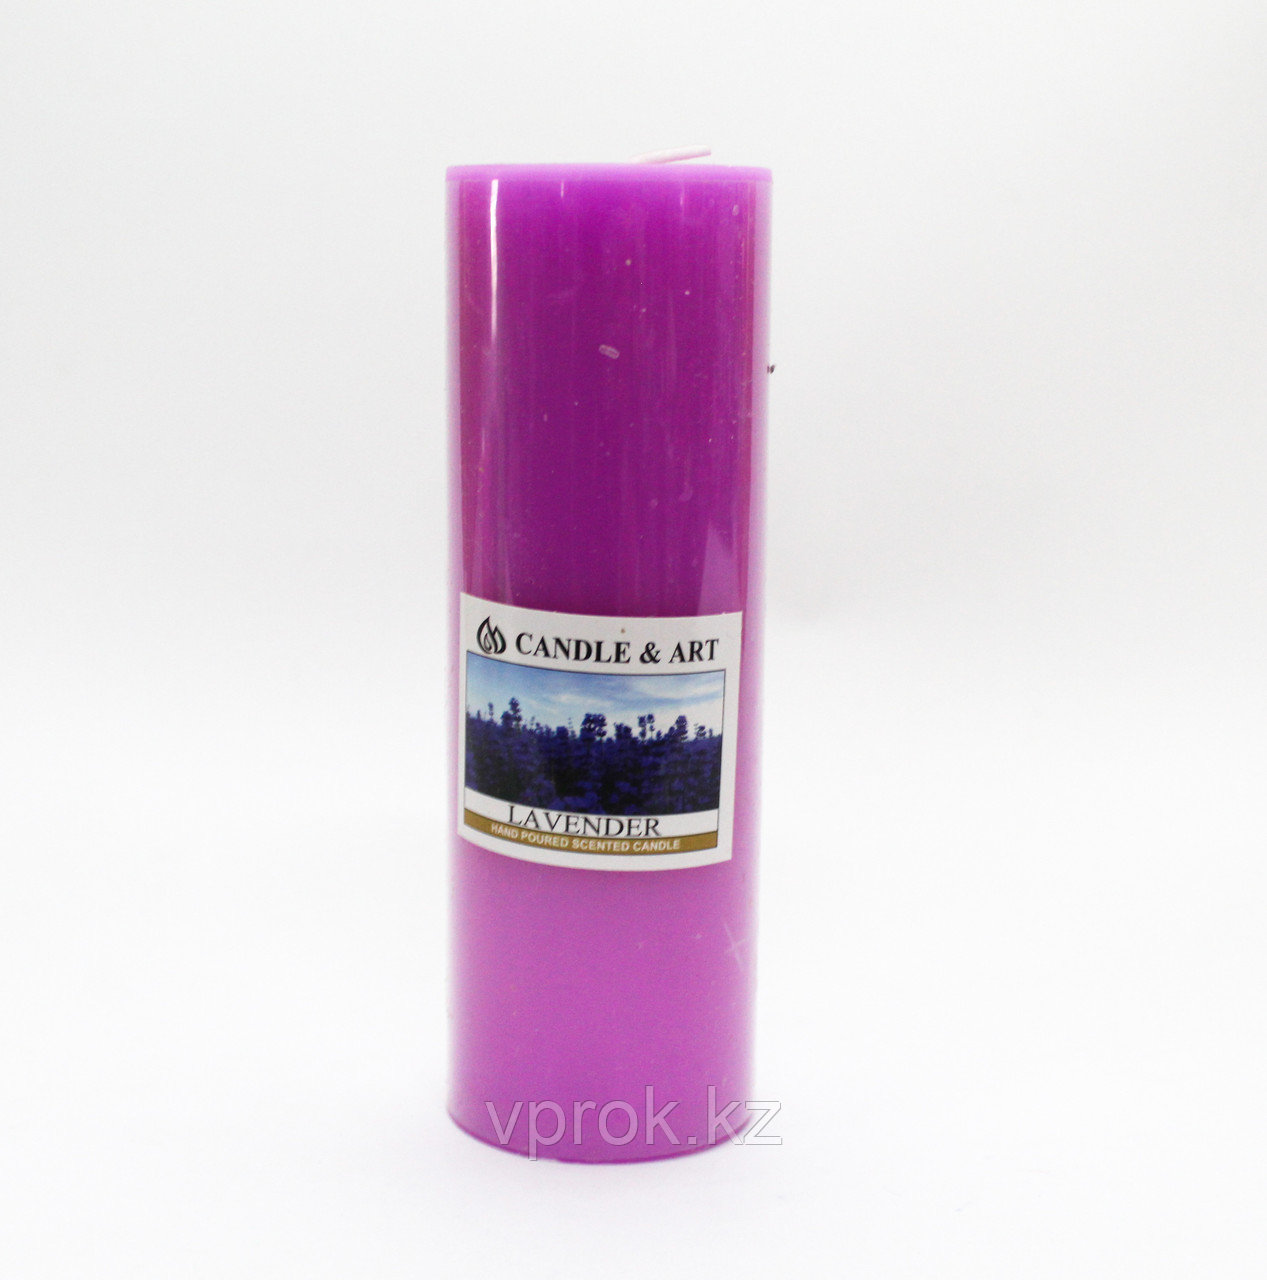 Ароматическая свеча, Lavender, 15 см, фото 1